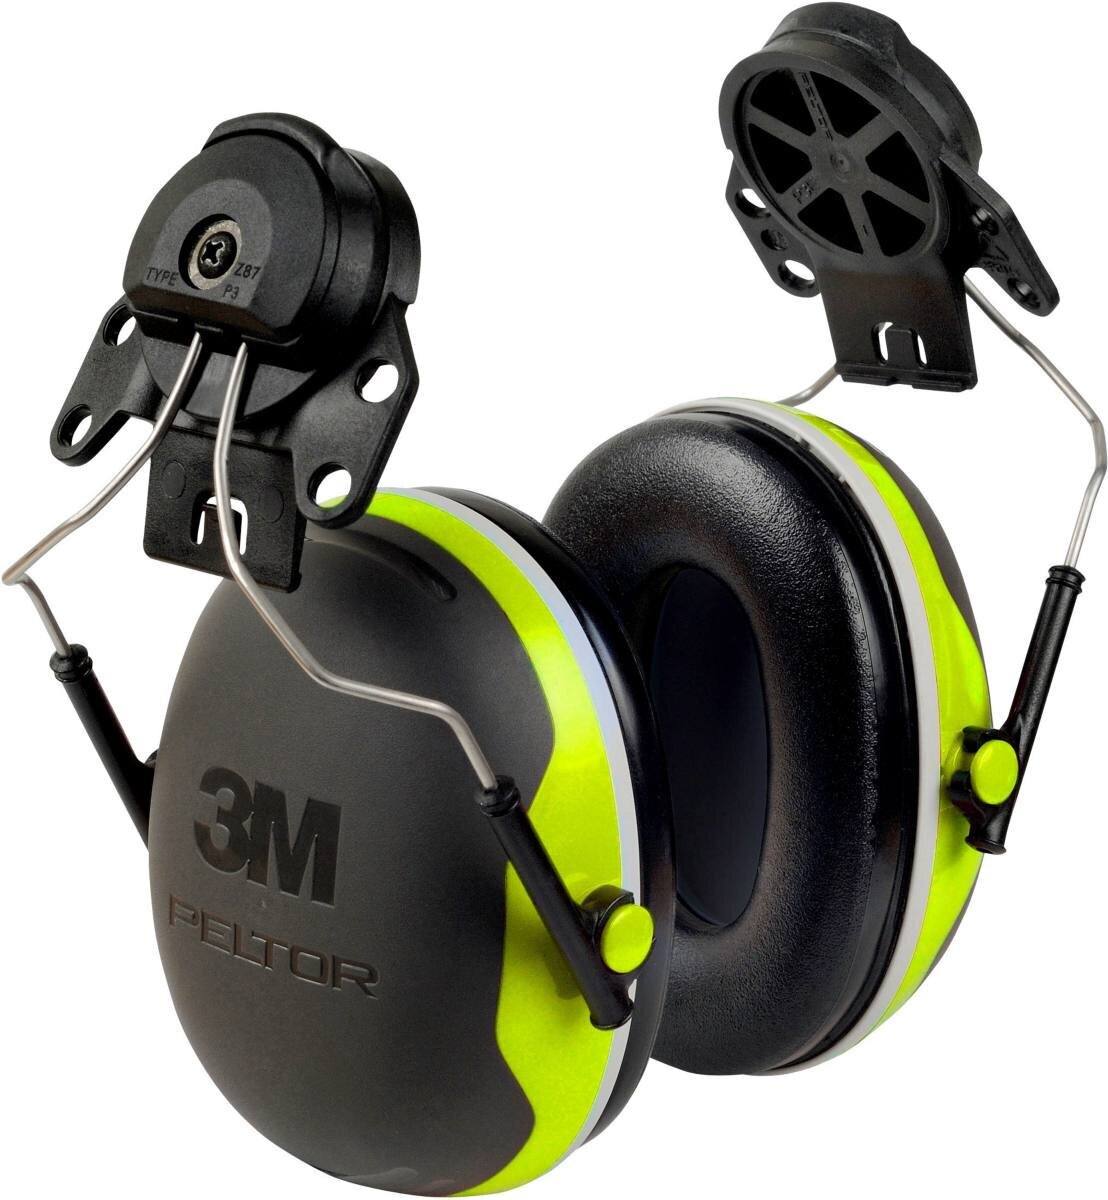 3M Peltor casque antibruit, X4P3E fixation pour casque, néon, jaune, SNR = 32 dB avec adaptateur pour casque P3E (pour tous les casques 3M, sauf G2000)